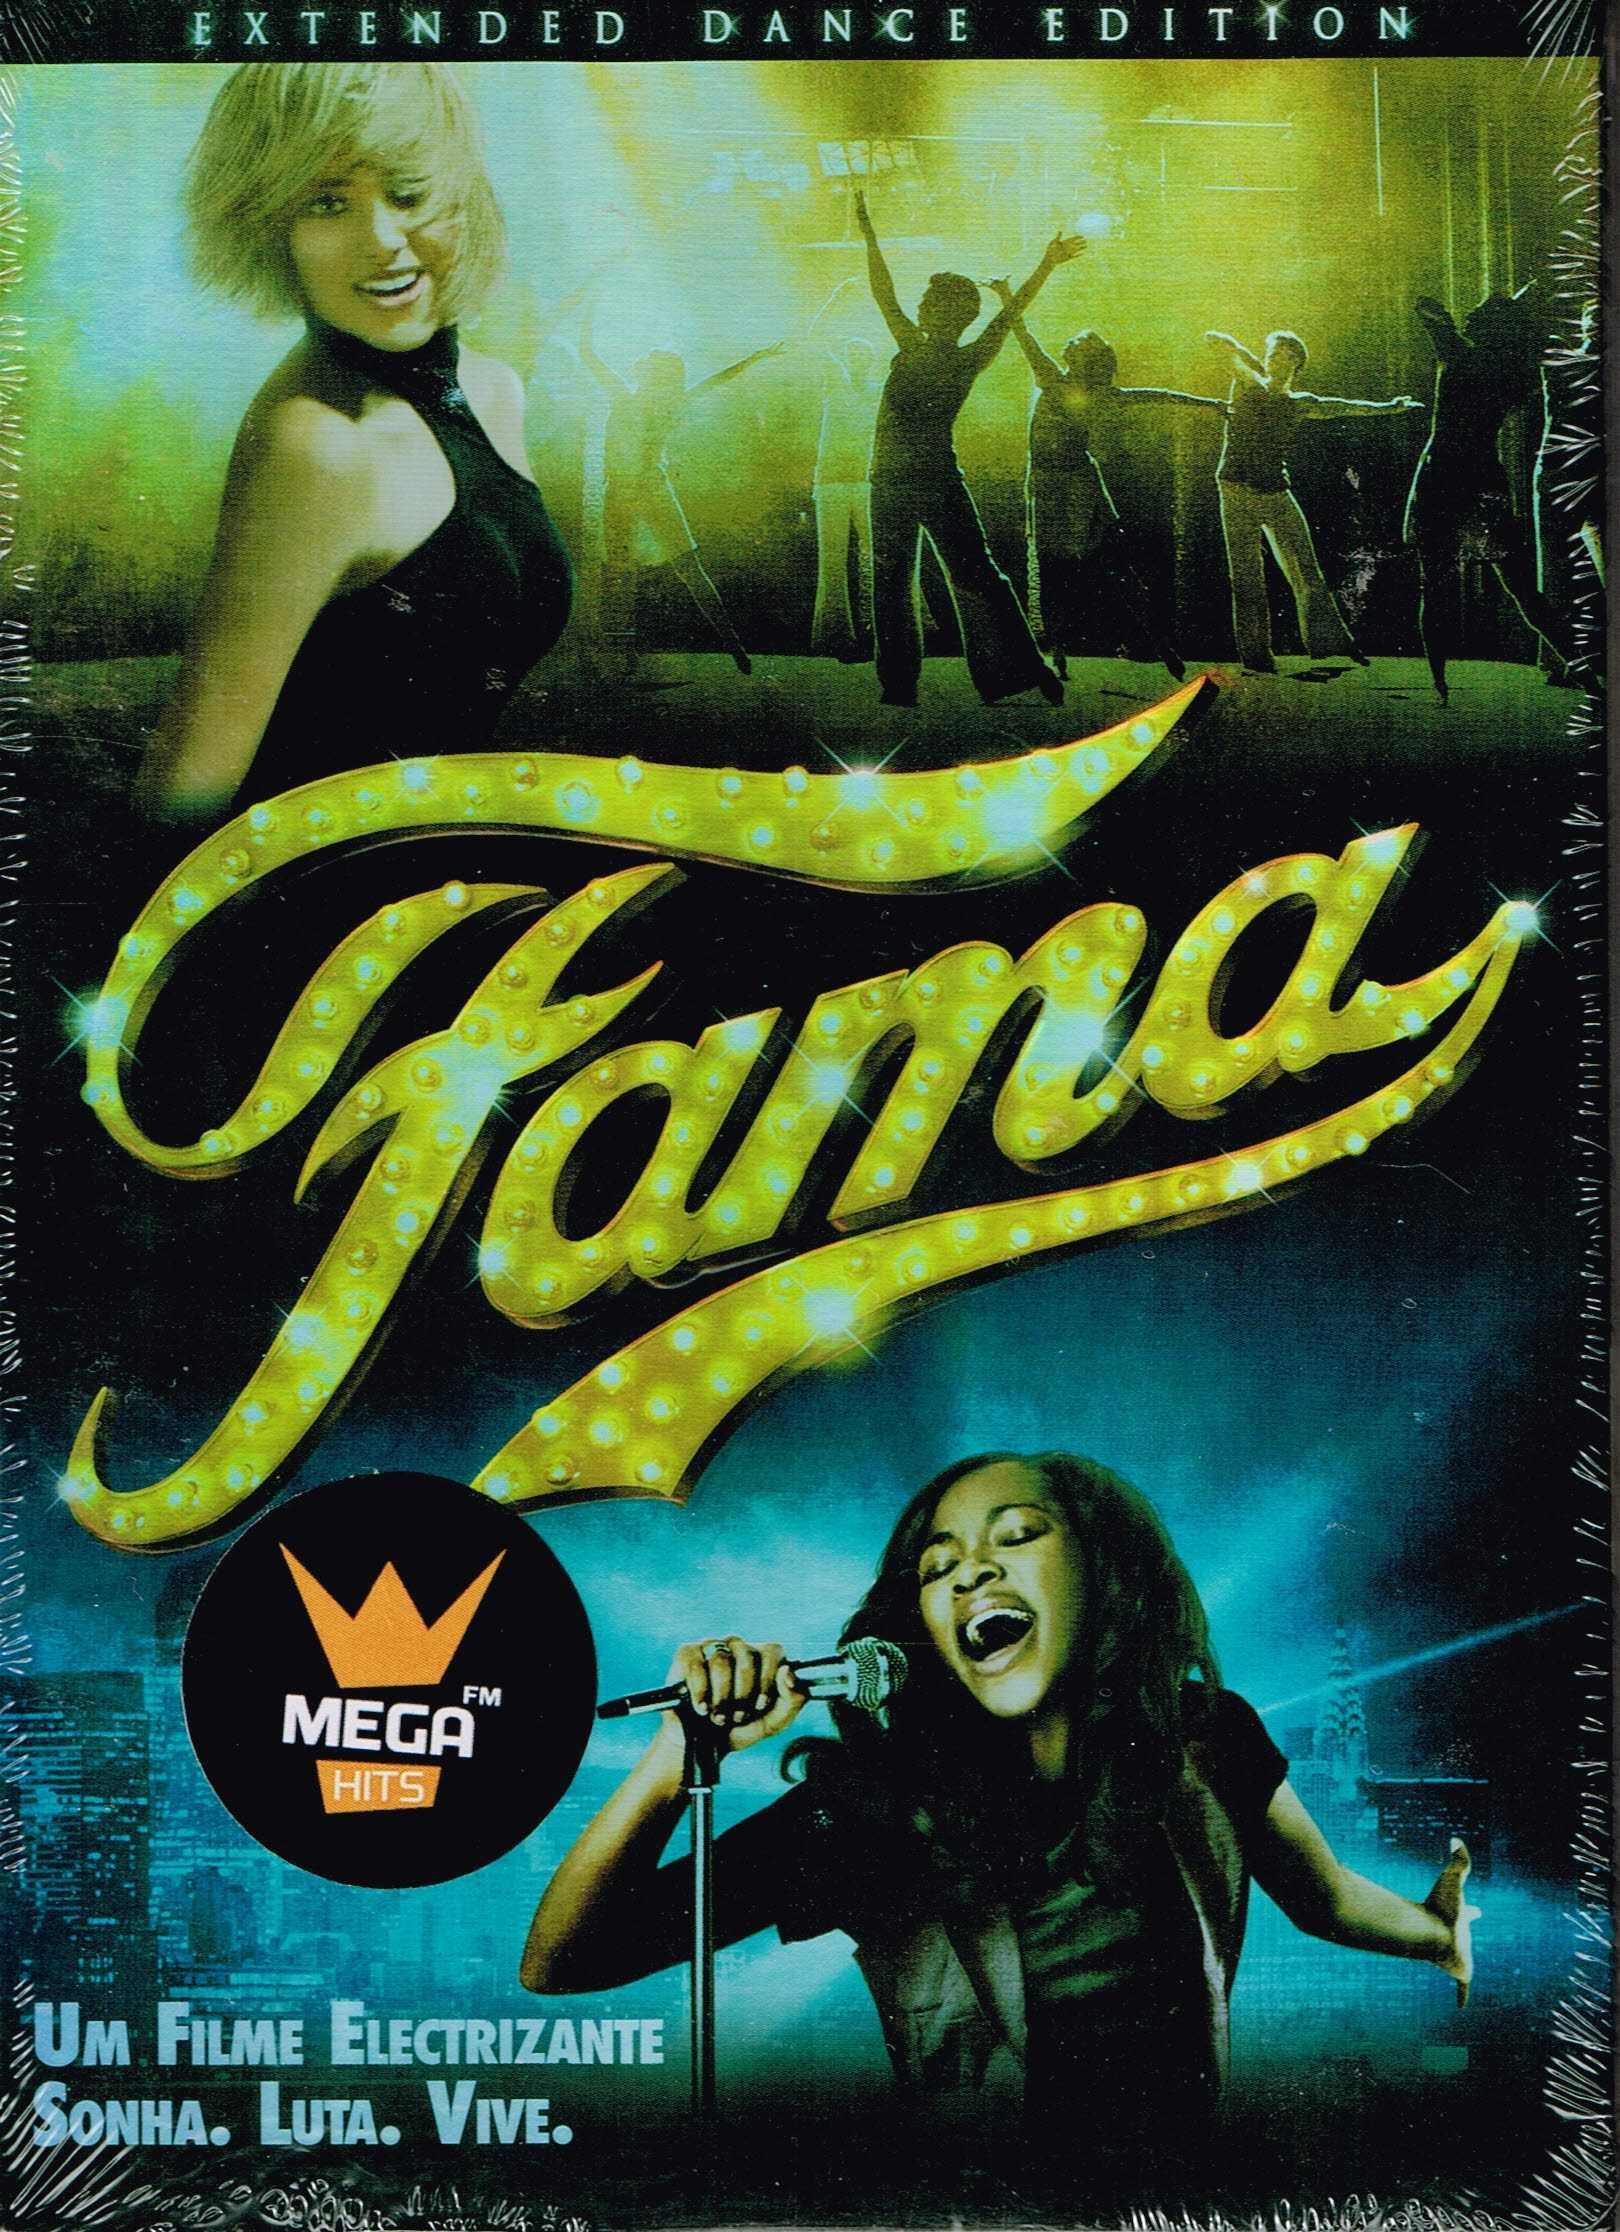 Filme em DVD: Fama "Fame" - NOVO! A Estrear! SELADO!